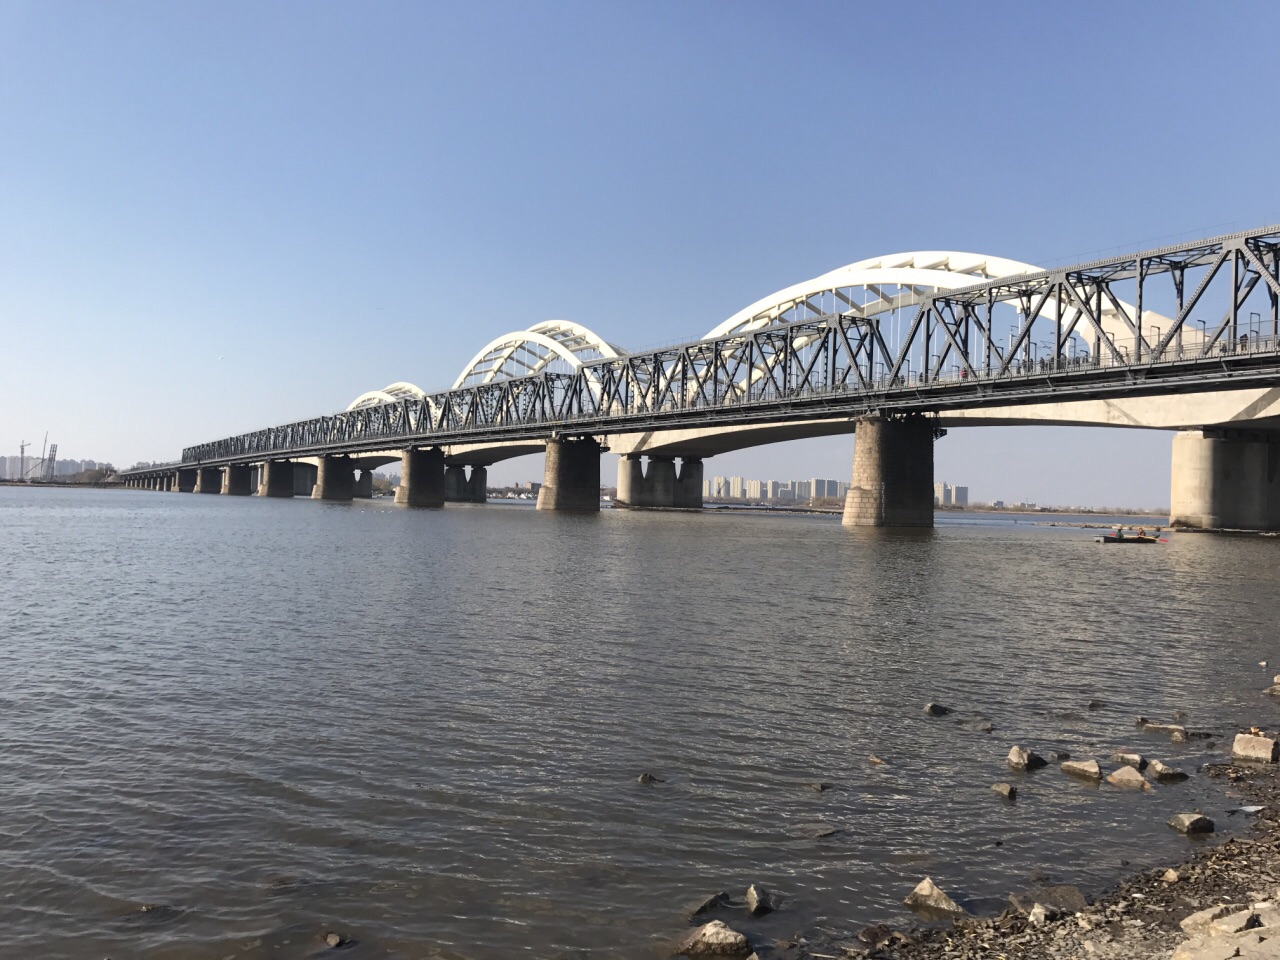 松花江公路大桥是北国冰城哈尔滨的一个著名旅游胜地伫立桥头,极目